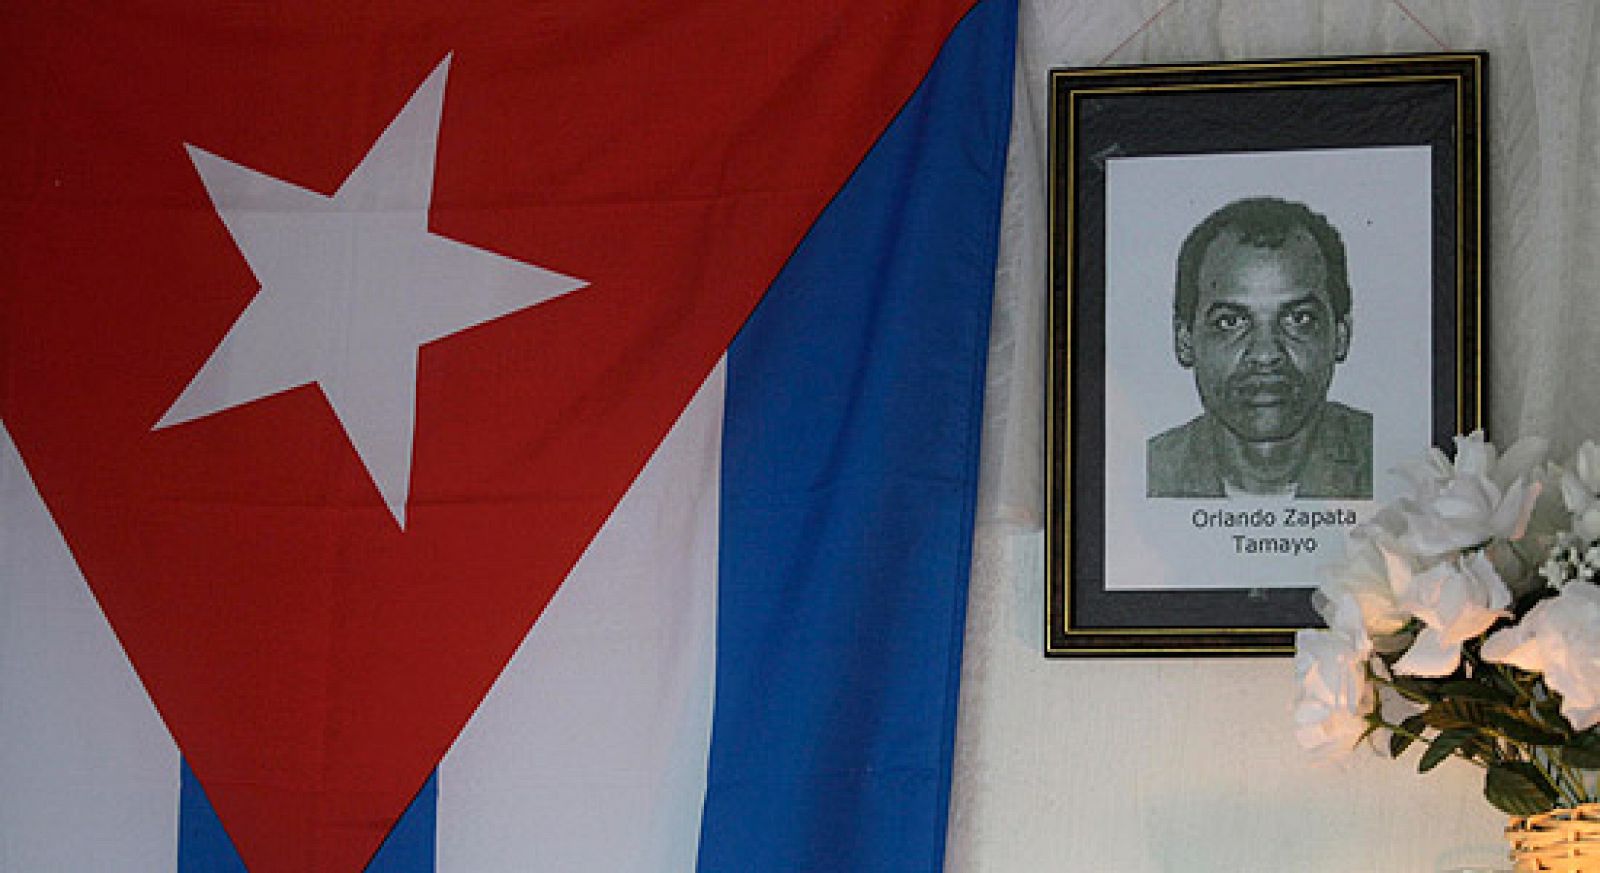 El disidente cubano murió tras 85 días en huelga de hambre